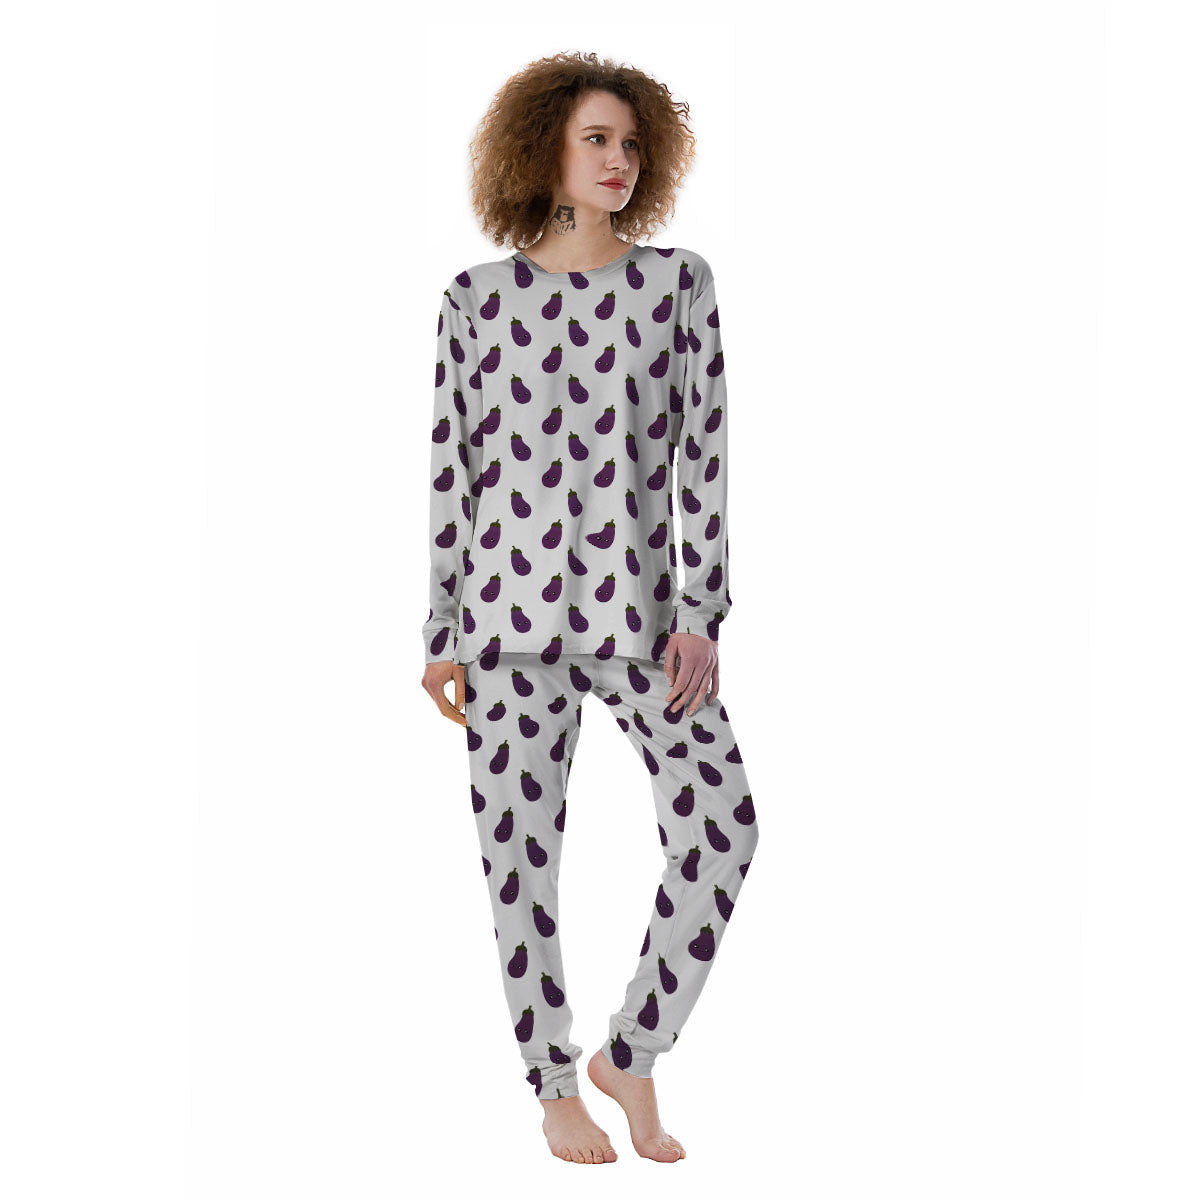 Fun & Novelty Women's Pajamas, Pajamas for Women